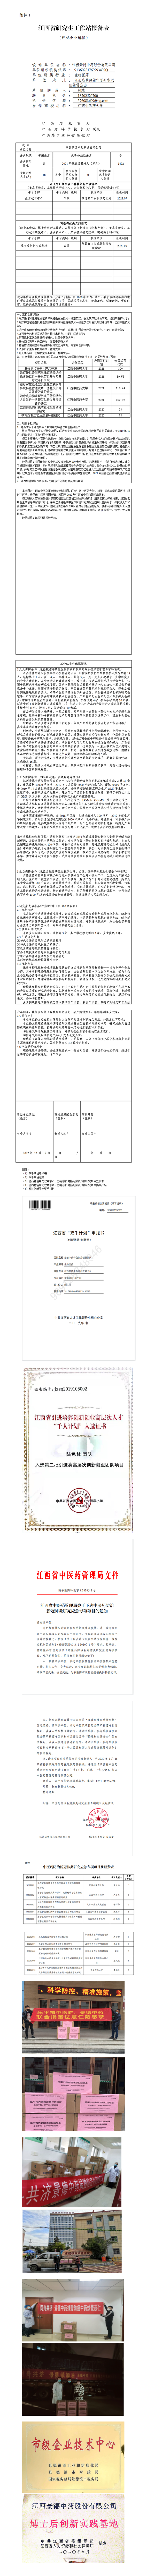 附件1：江西省研究生工作站报备表—景德中药_01.png